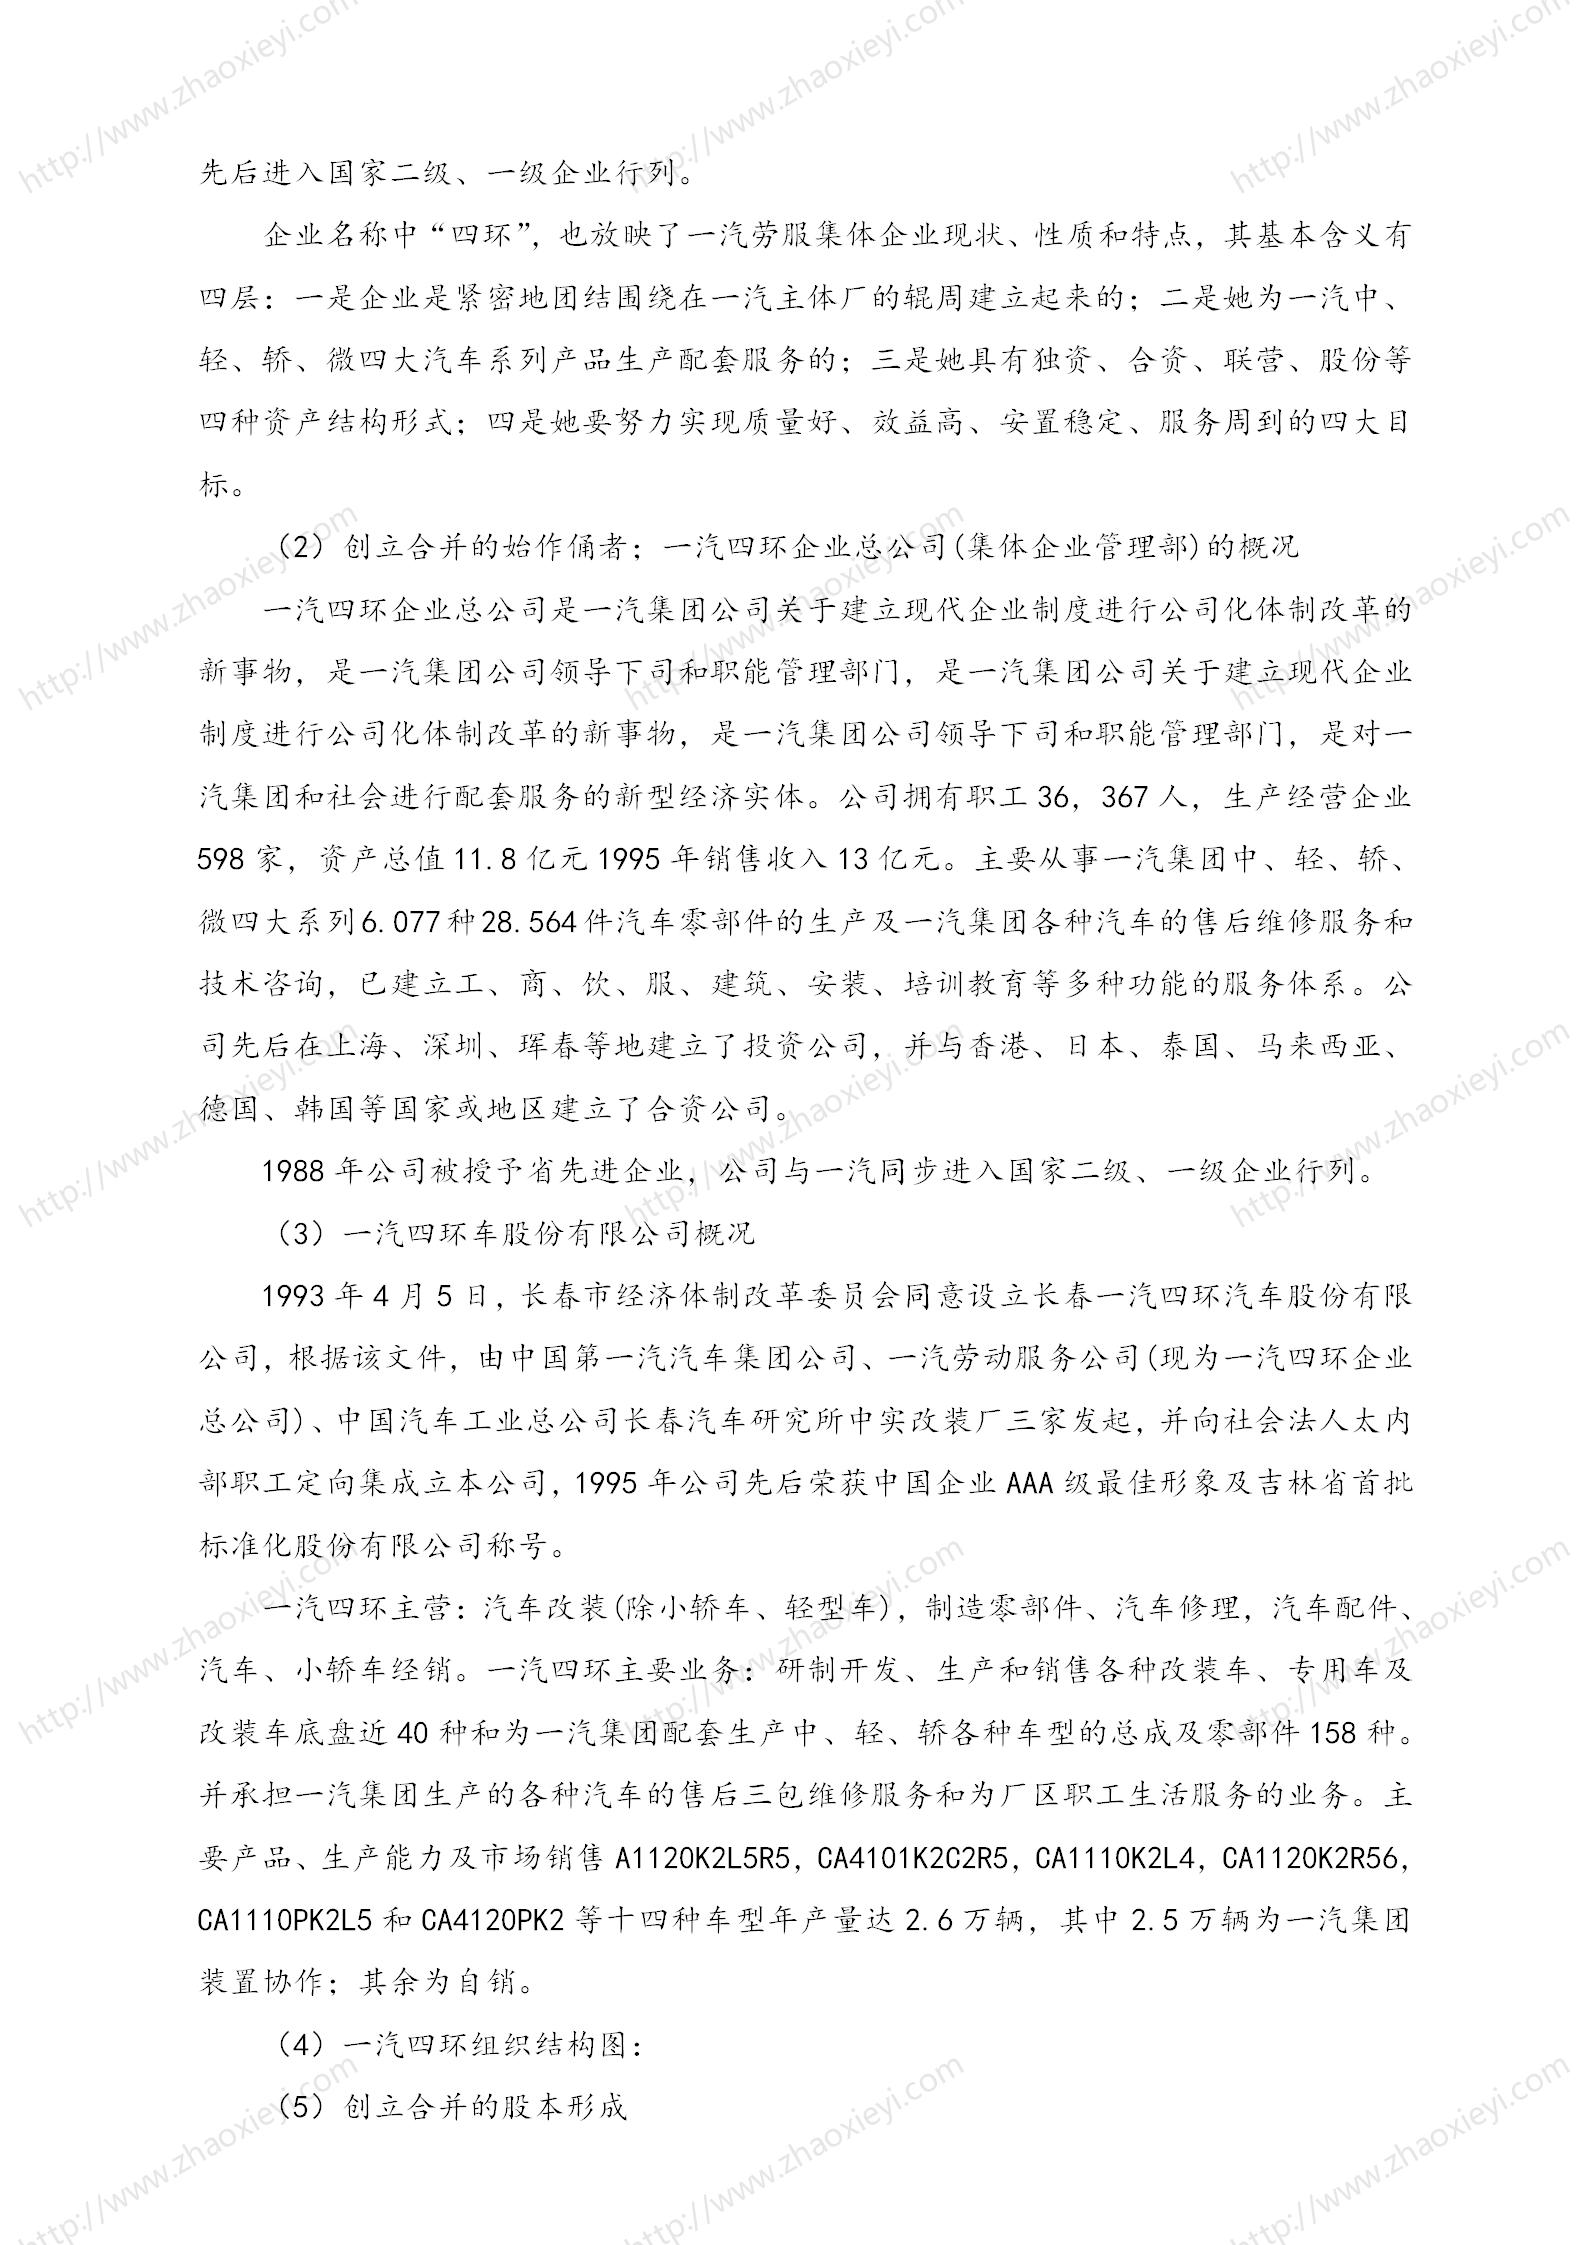 中国企业并购经典案例_174.jpg